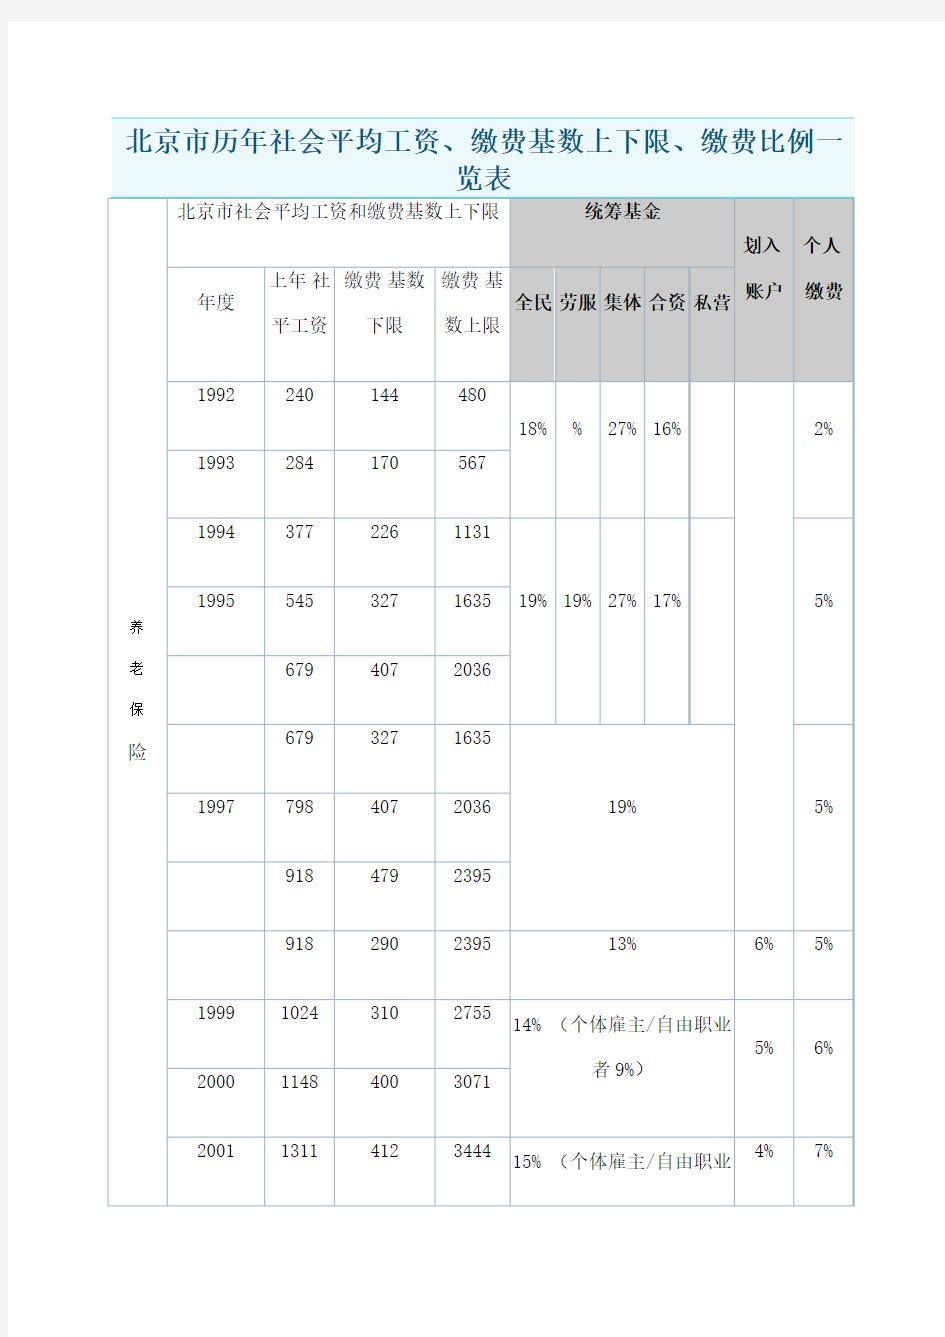 北京市历年社会平均工资